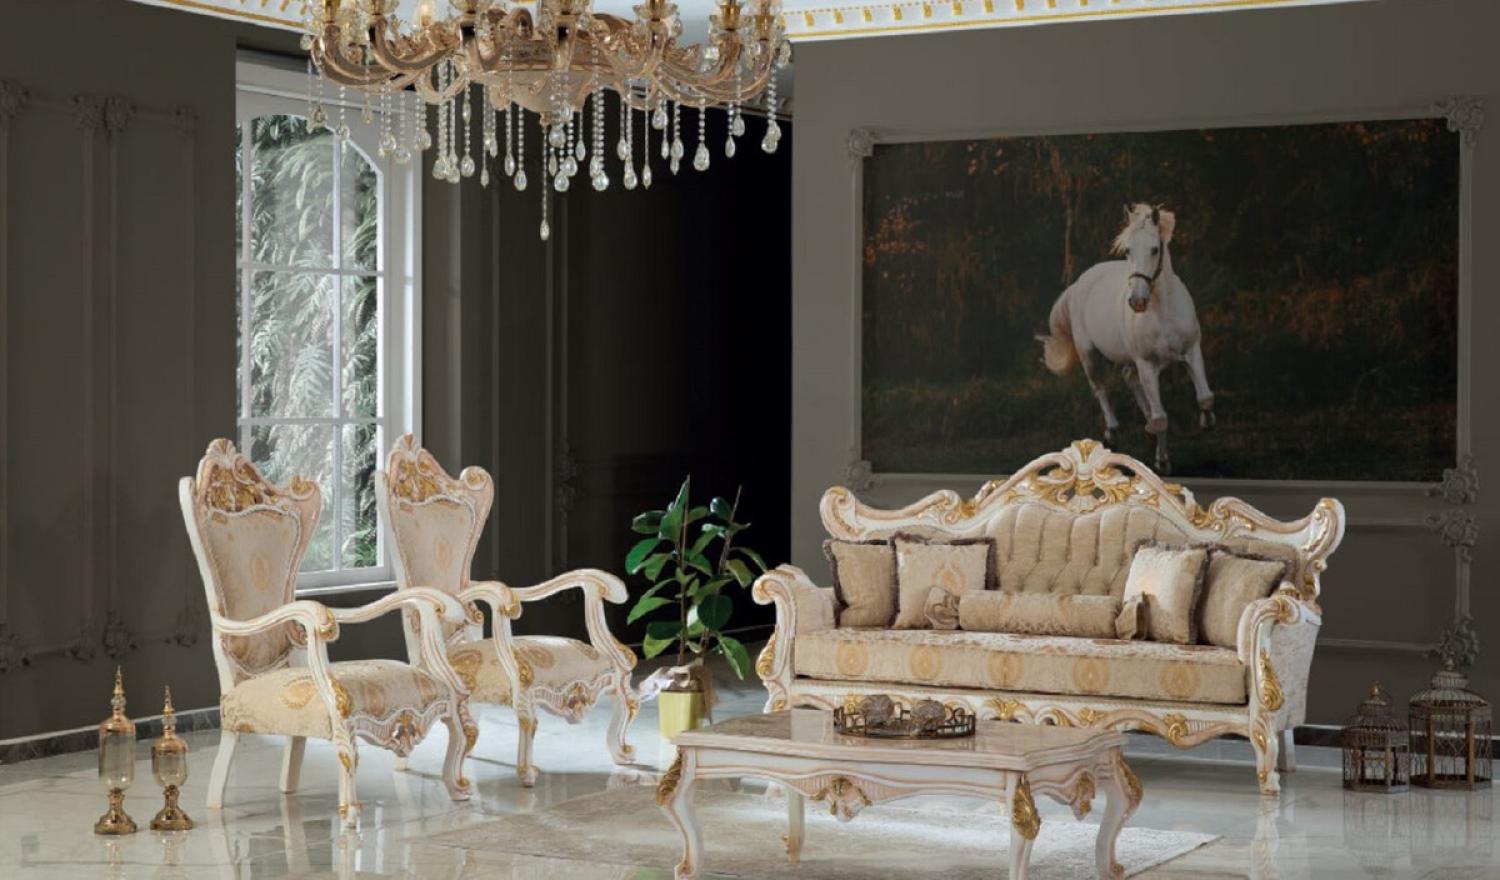 Casa Padrino Luxus Barock Wohnzimmer Set Beige / Weiß / Gold - 2 Sofas & 2 Sessel & 1 Couchtisch - Handgefertigte Wohnzimmer Möbel im Barockstil - Edel & Prunkvoll Bild 1